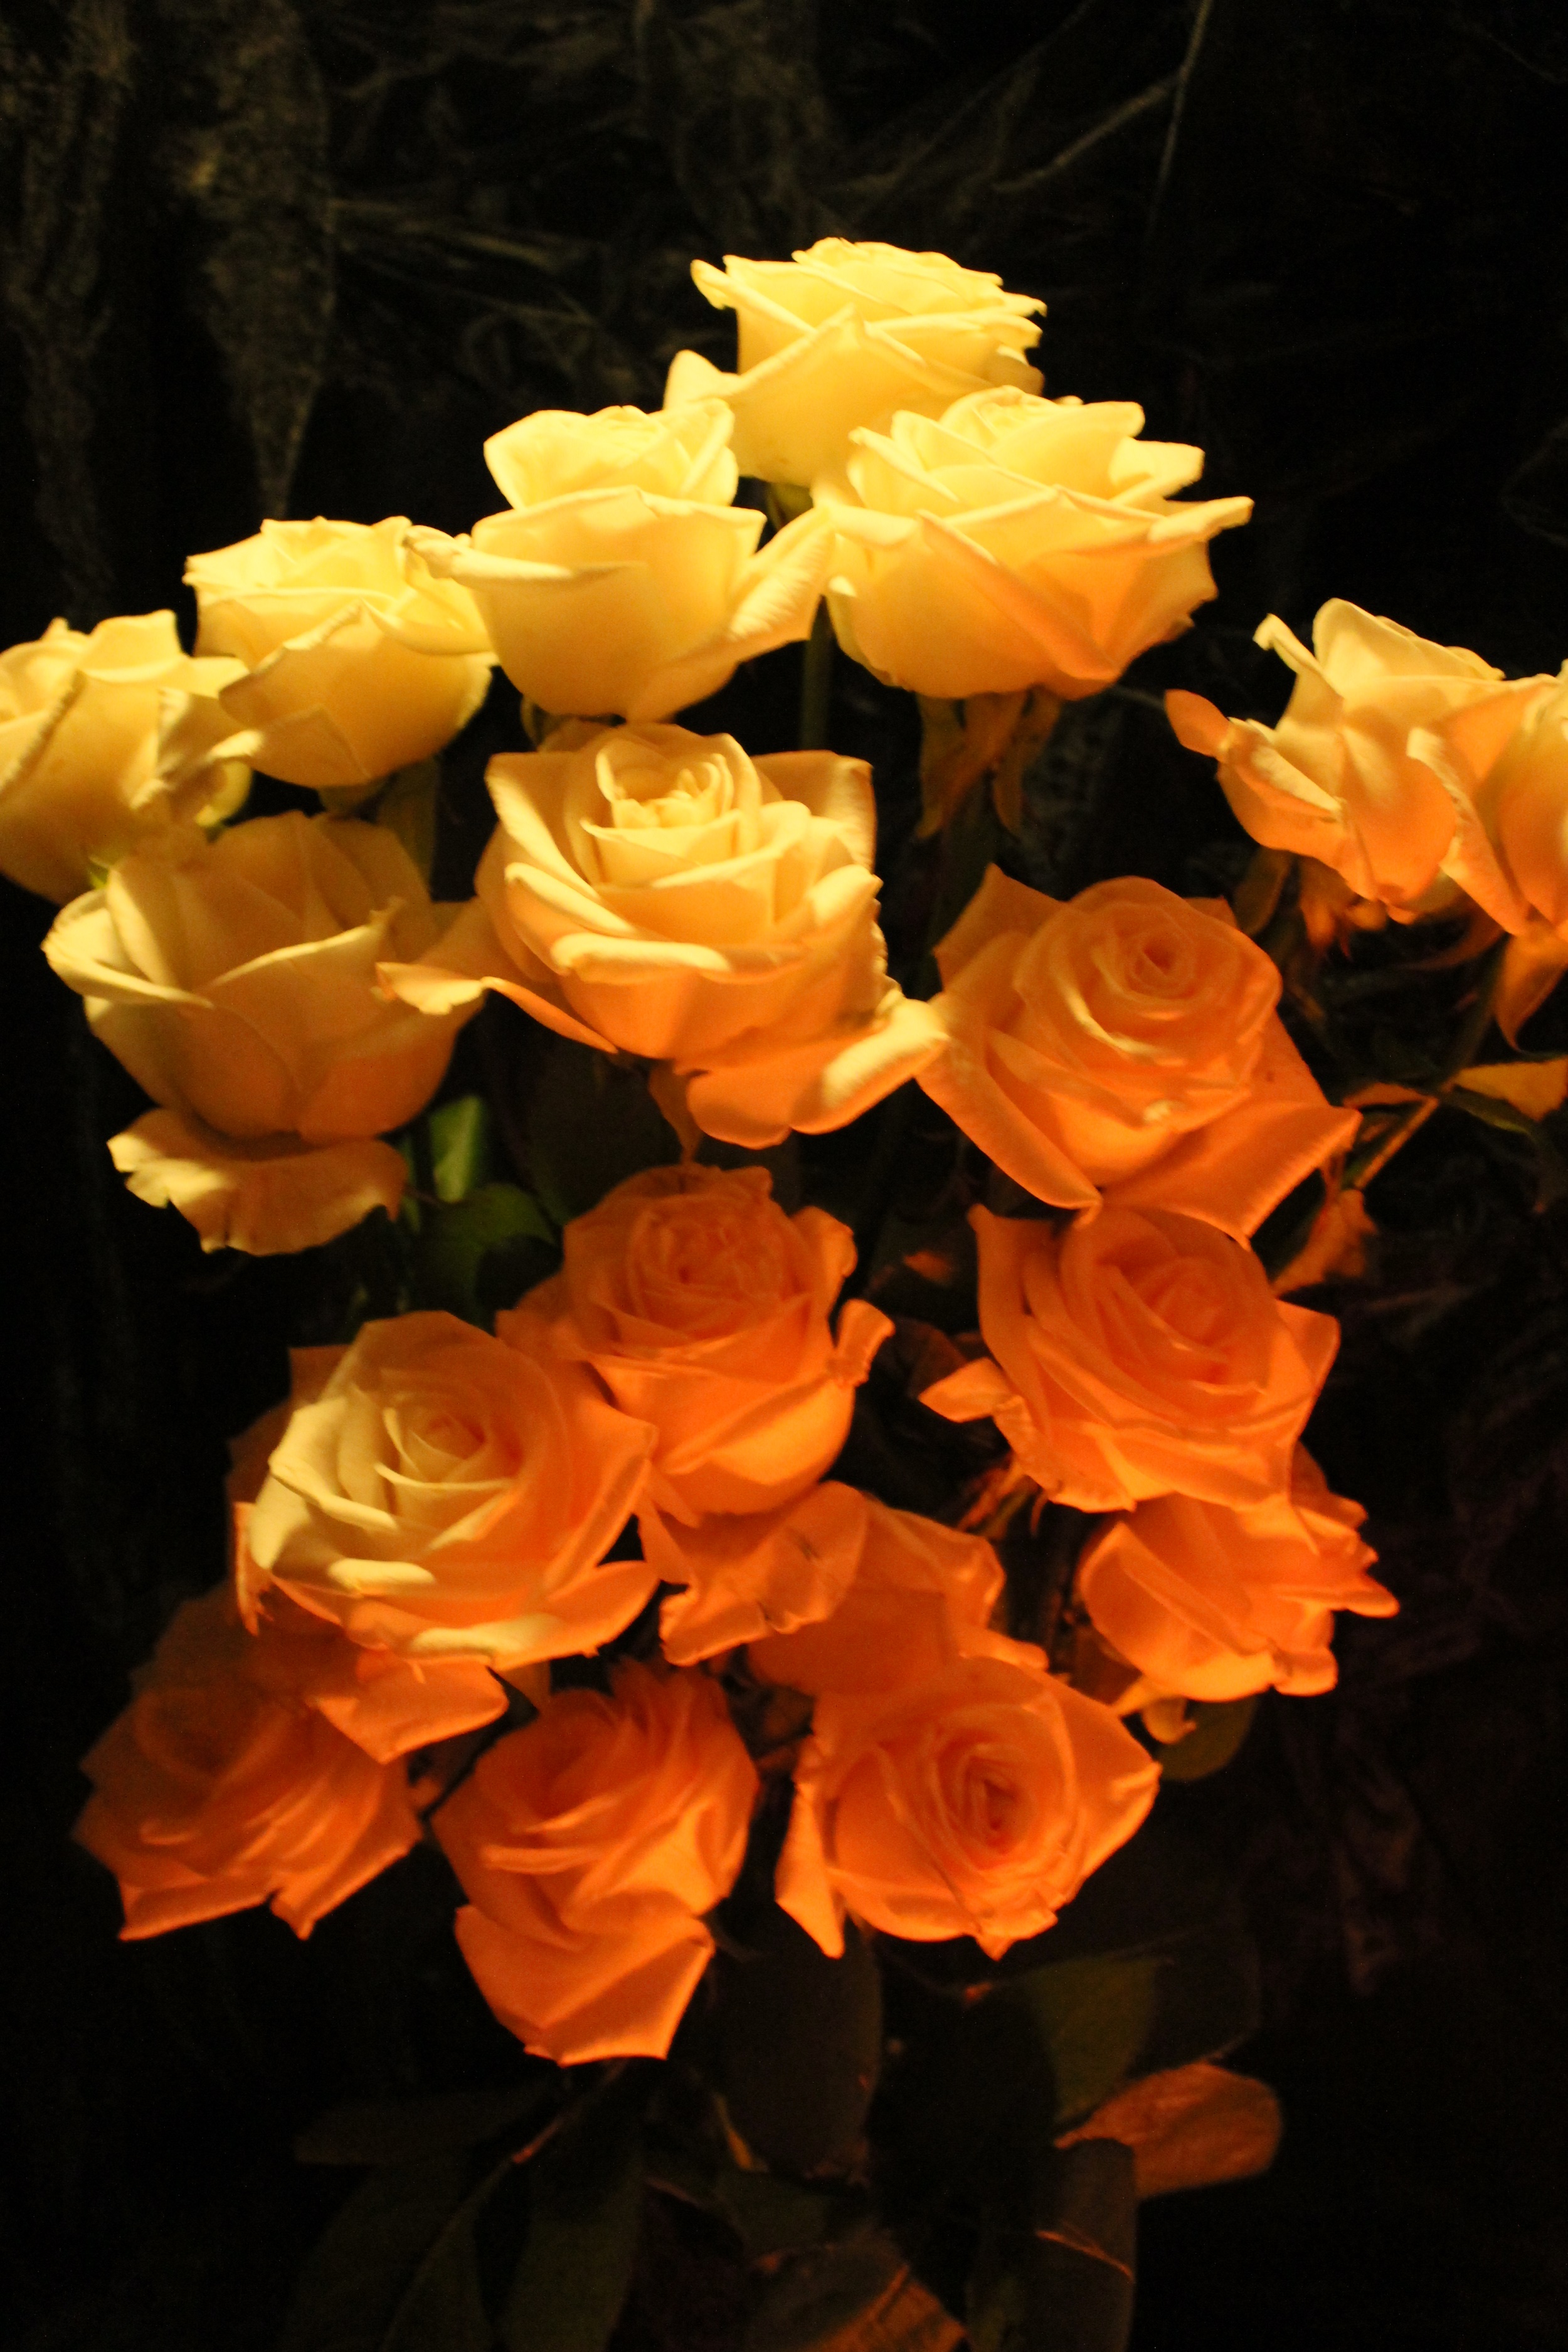 Roses by Redski